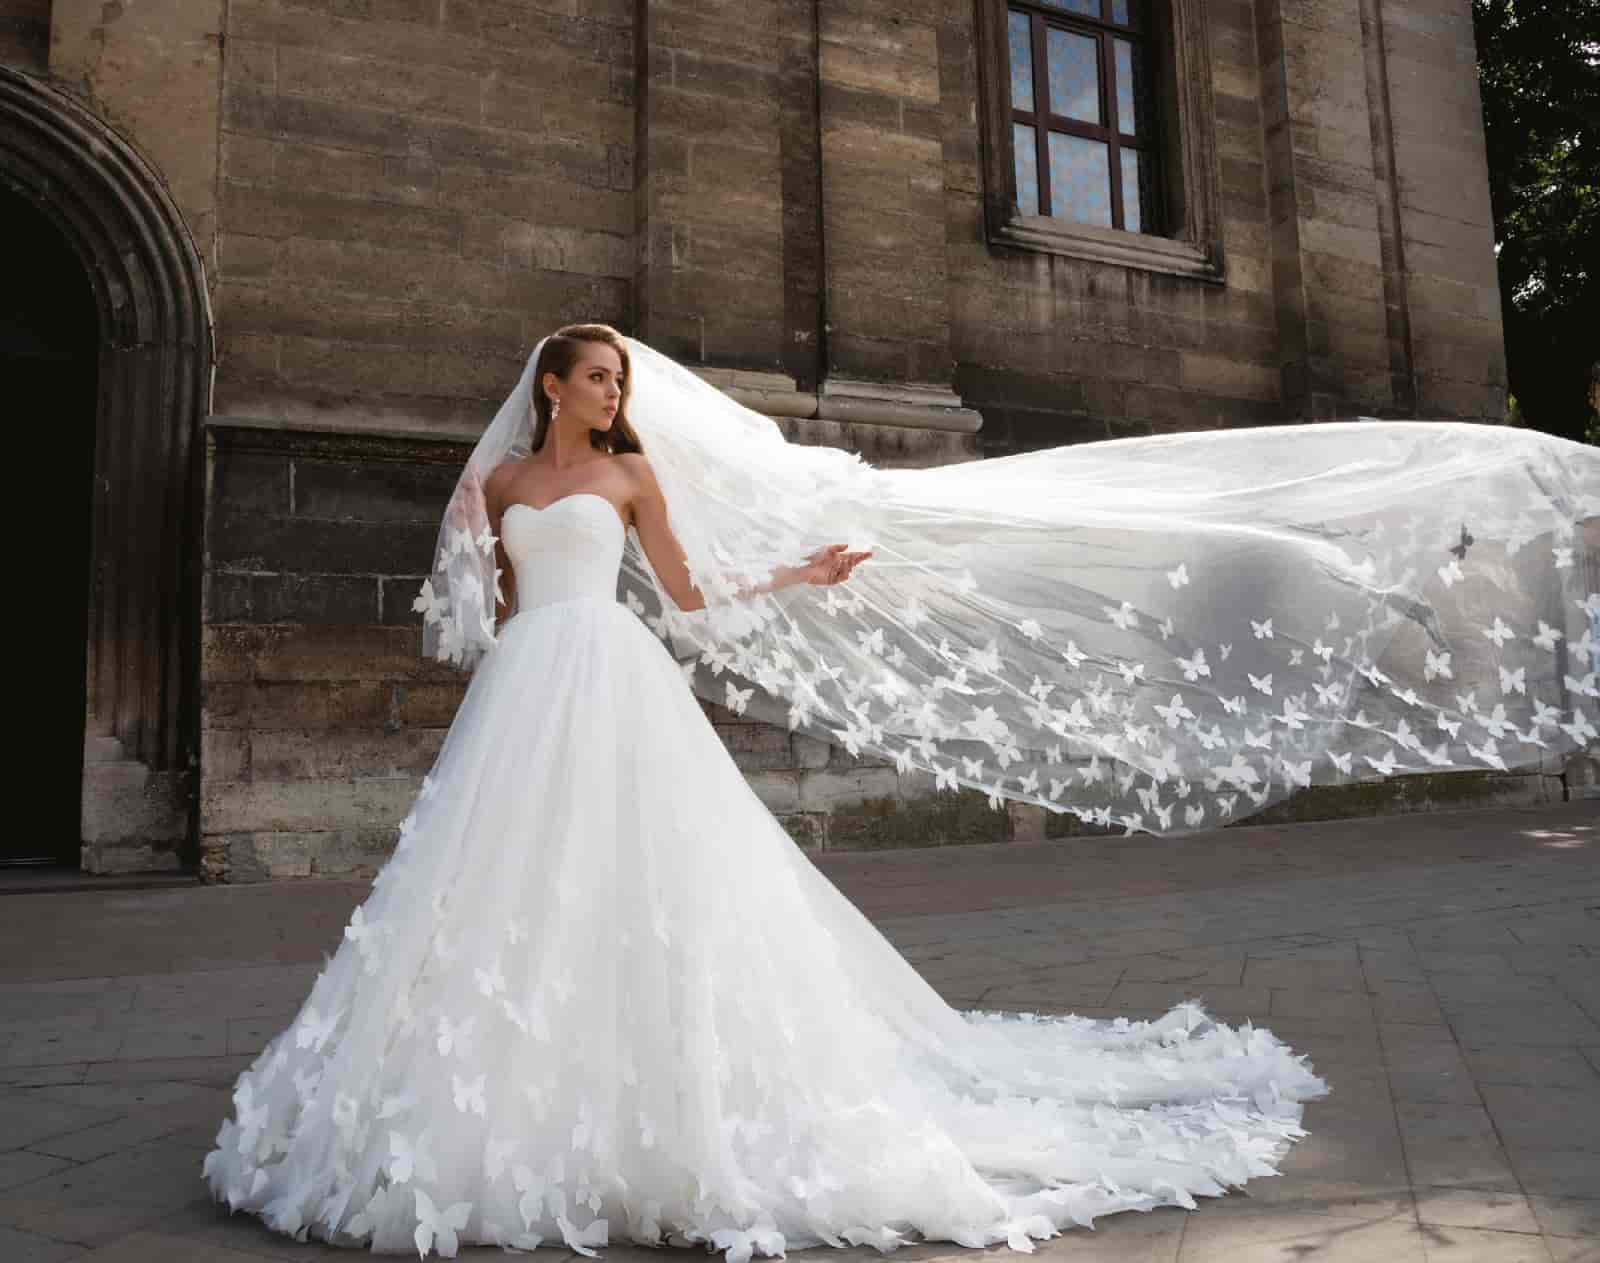 How much is a custom wedding dress